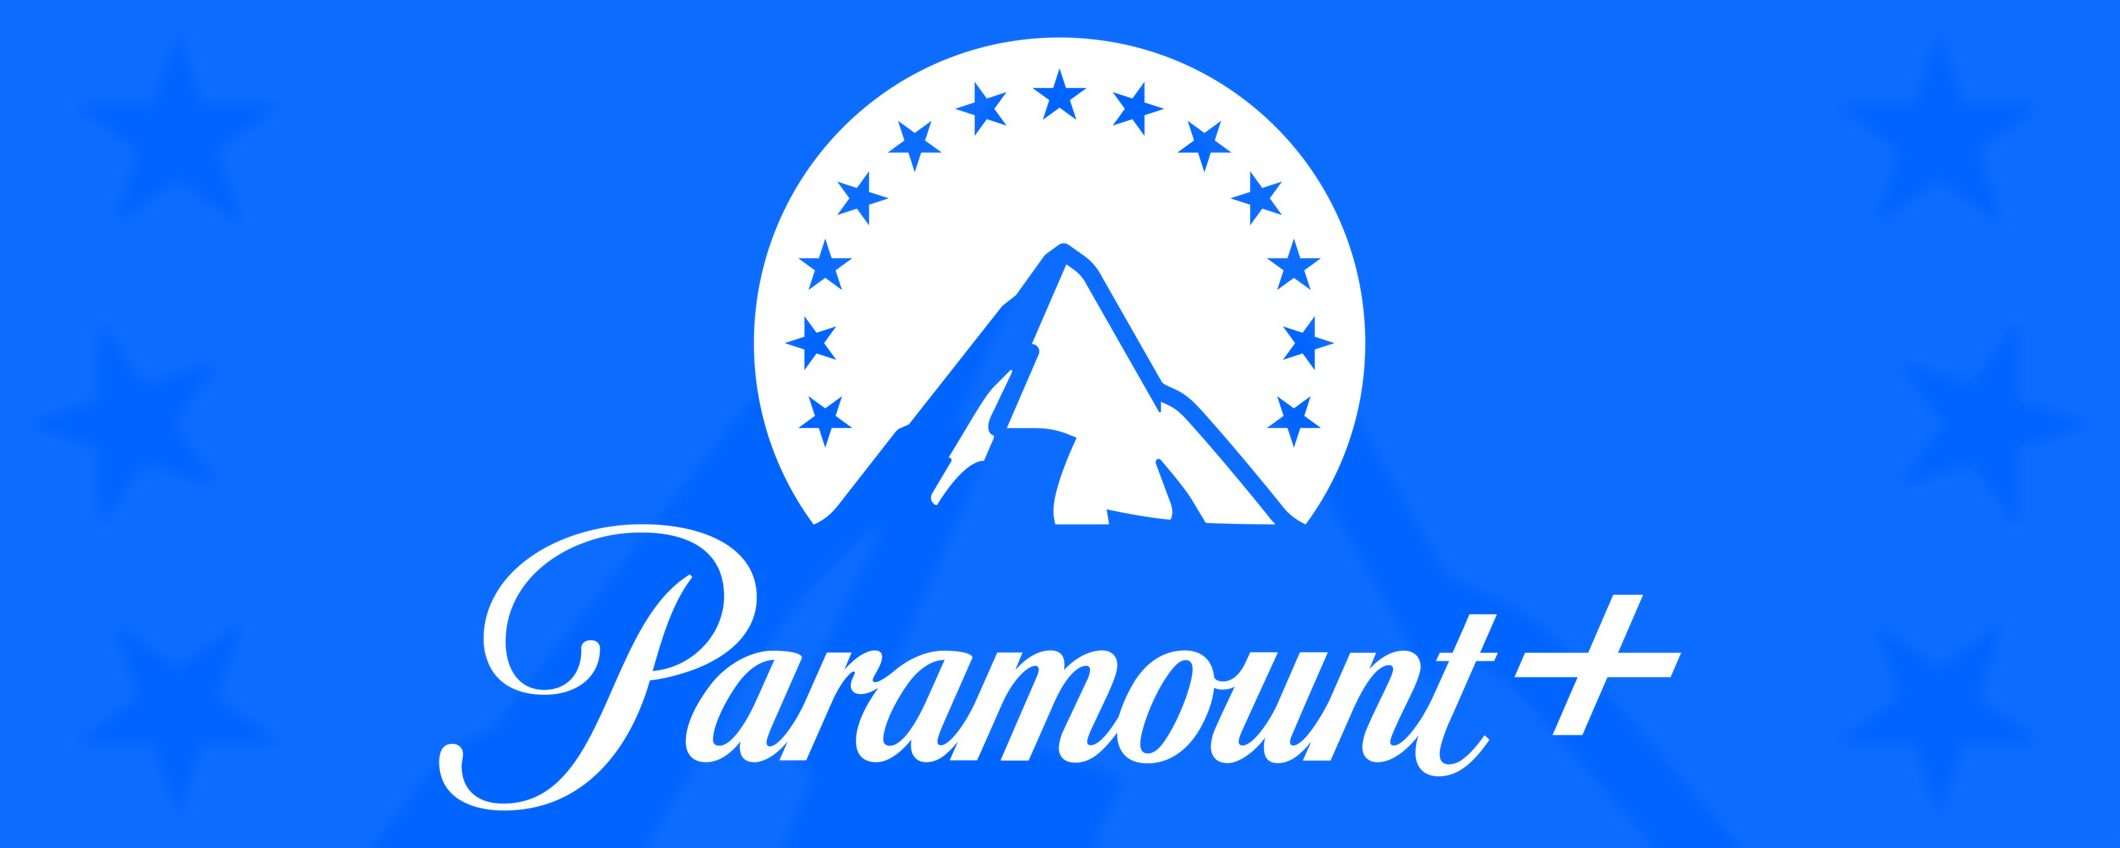 Paramount+ in UK: come vederla subito dall'Italia